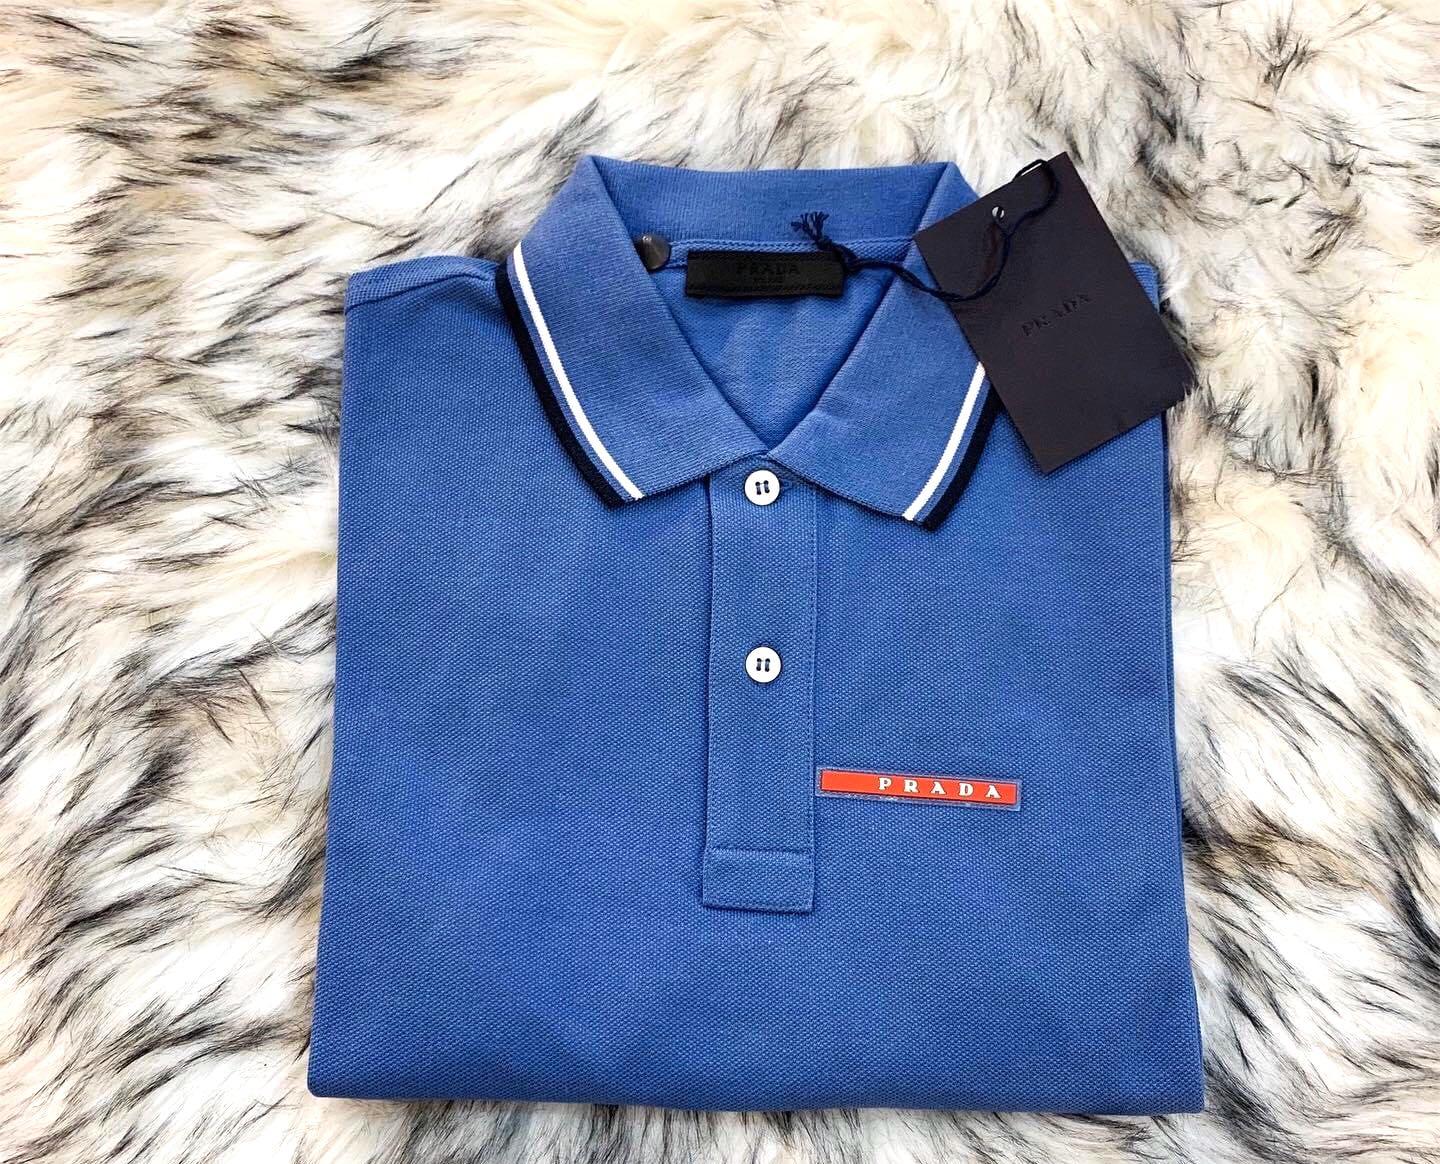 PRADA Mens Polo Shirt Light Blue ON HAND MEDIUM ✓, Men's Fashion, Tops &  Sets, Tshirts & Polo Shirts on Carousell